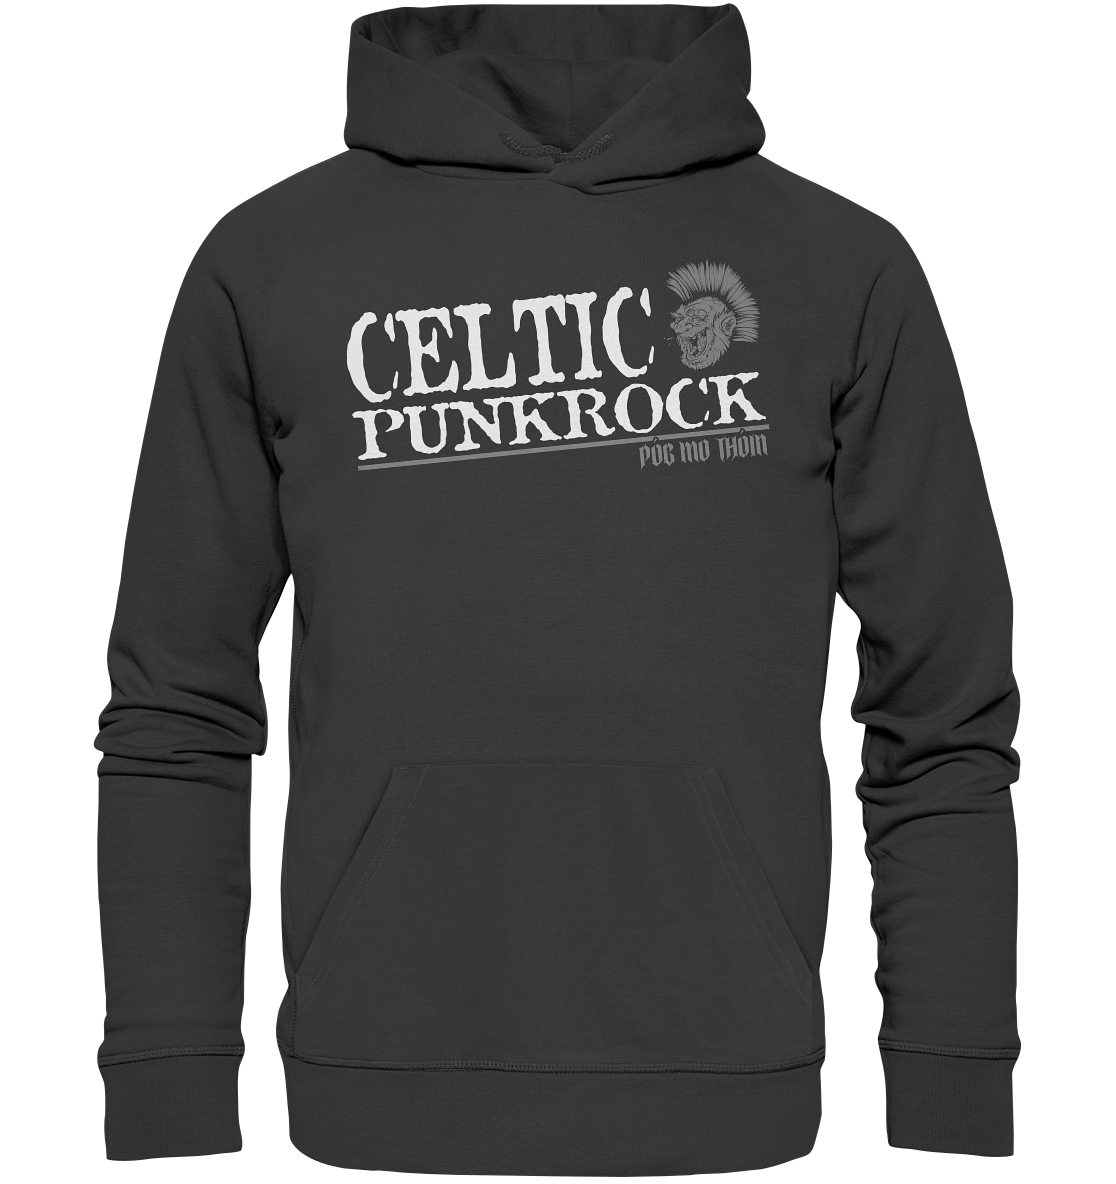 Póg Mo Thóin Streetwear "Celtic Punkrock" - Premium Unisex Hoodie